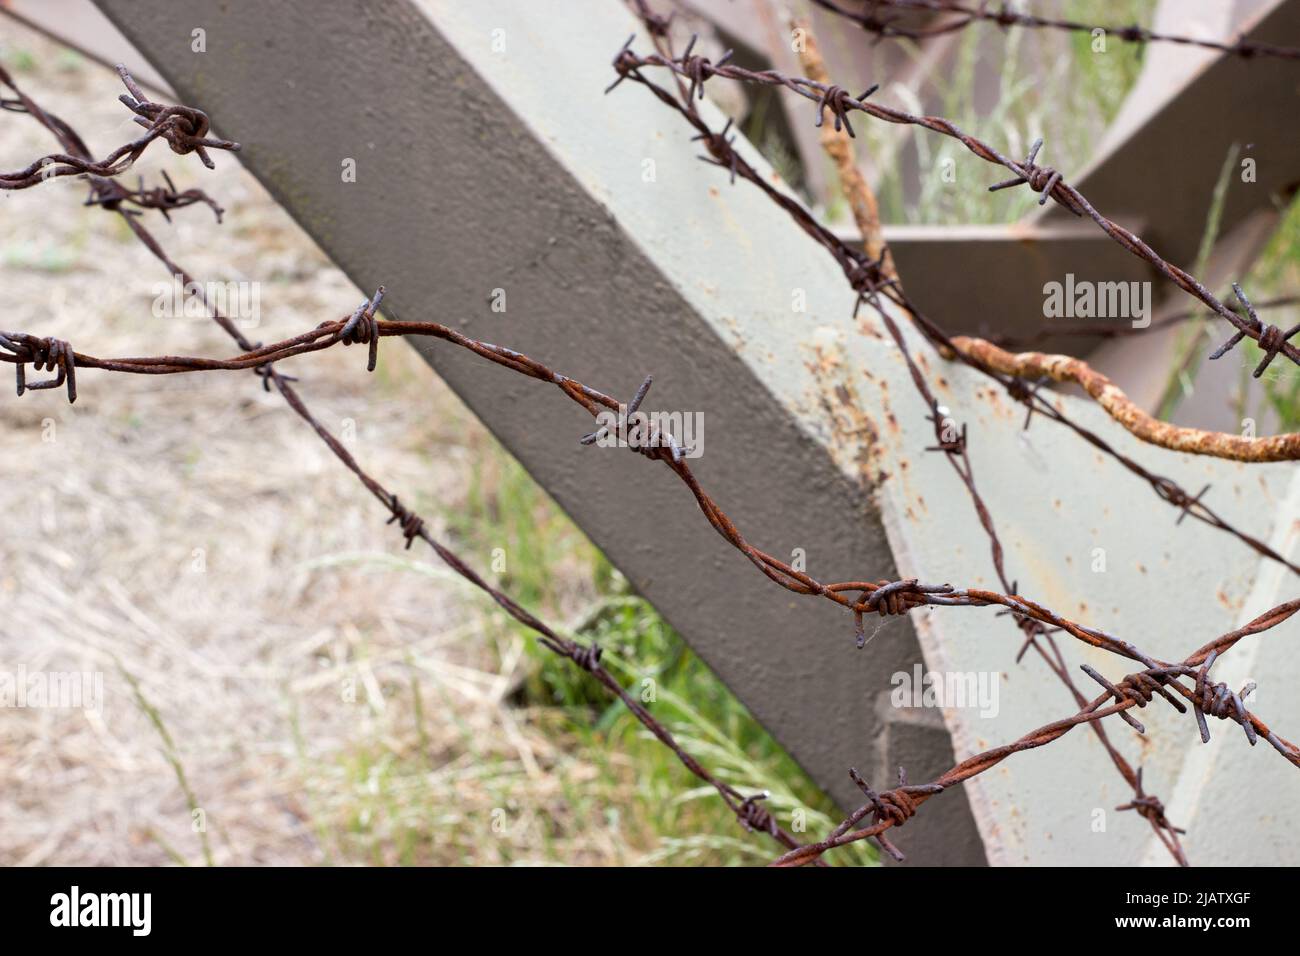 Particolare della barriera anti-vasca hedgehod con filo spinato arrugginito Foto Stock